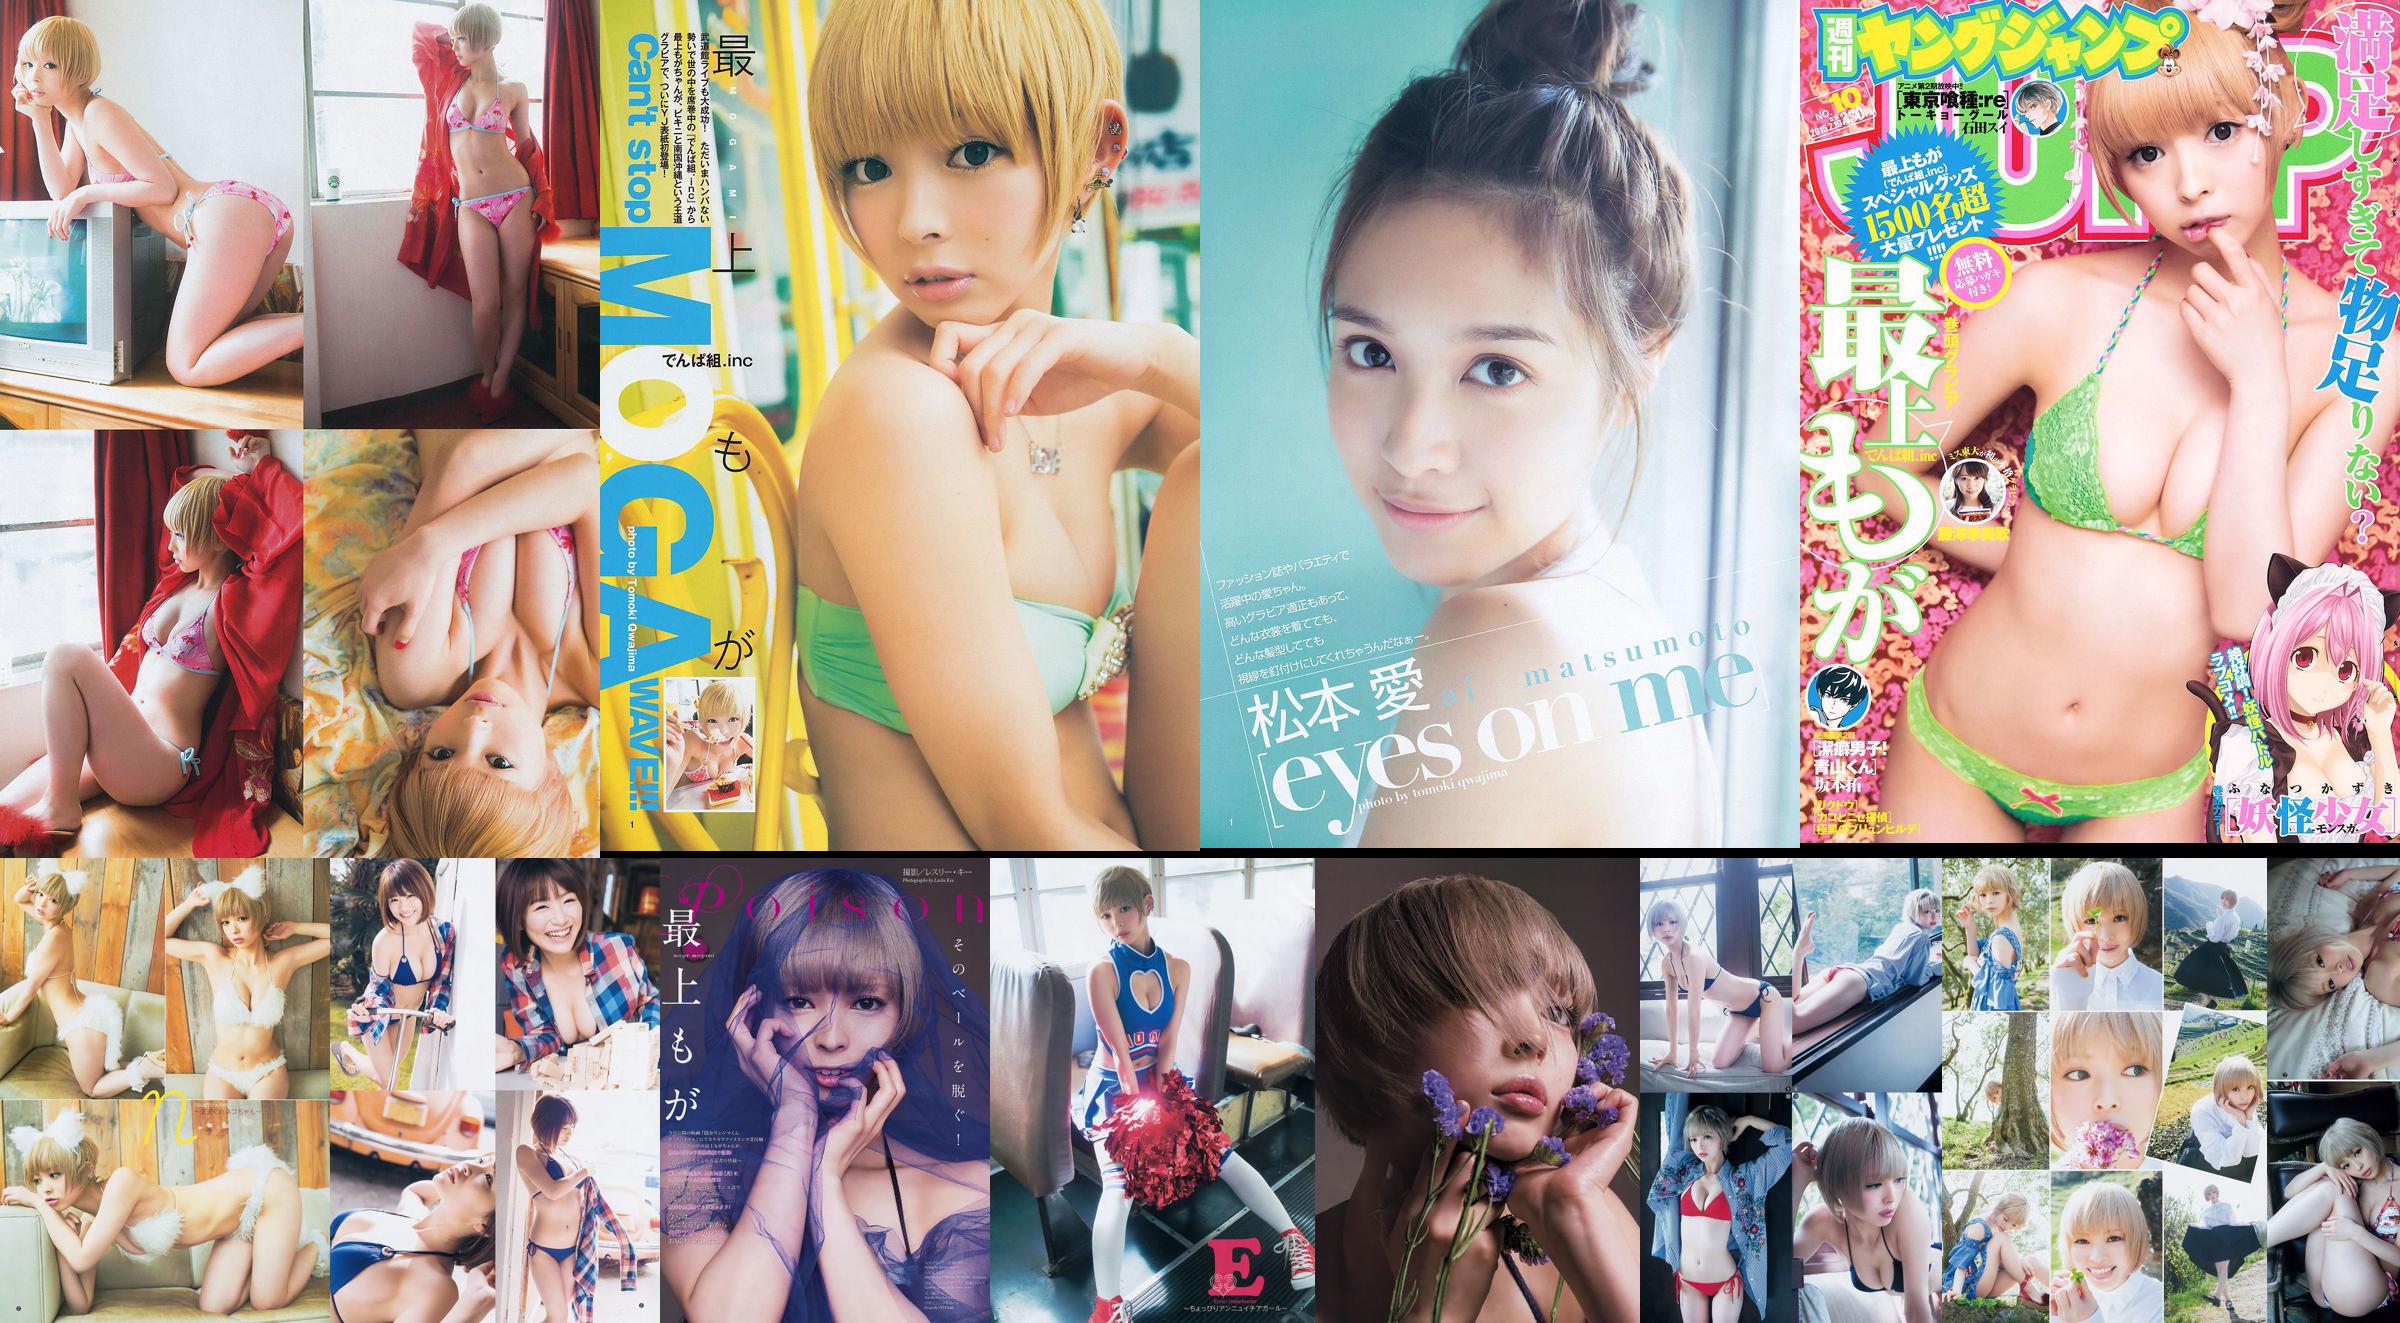 最上もが 舞川あや 糸山千恵 [Weekly Young Jump] 2014年No.15 写真杂志 No.3e984e 第1頁